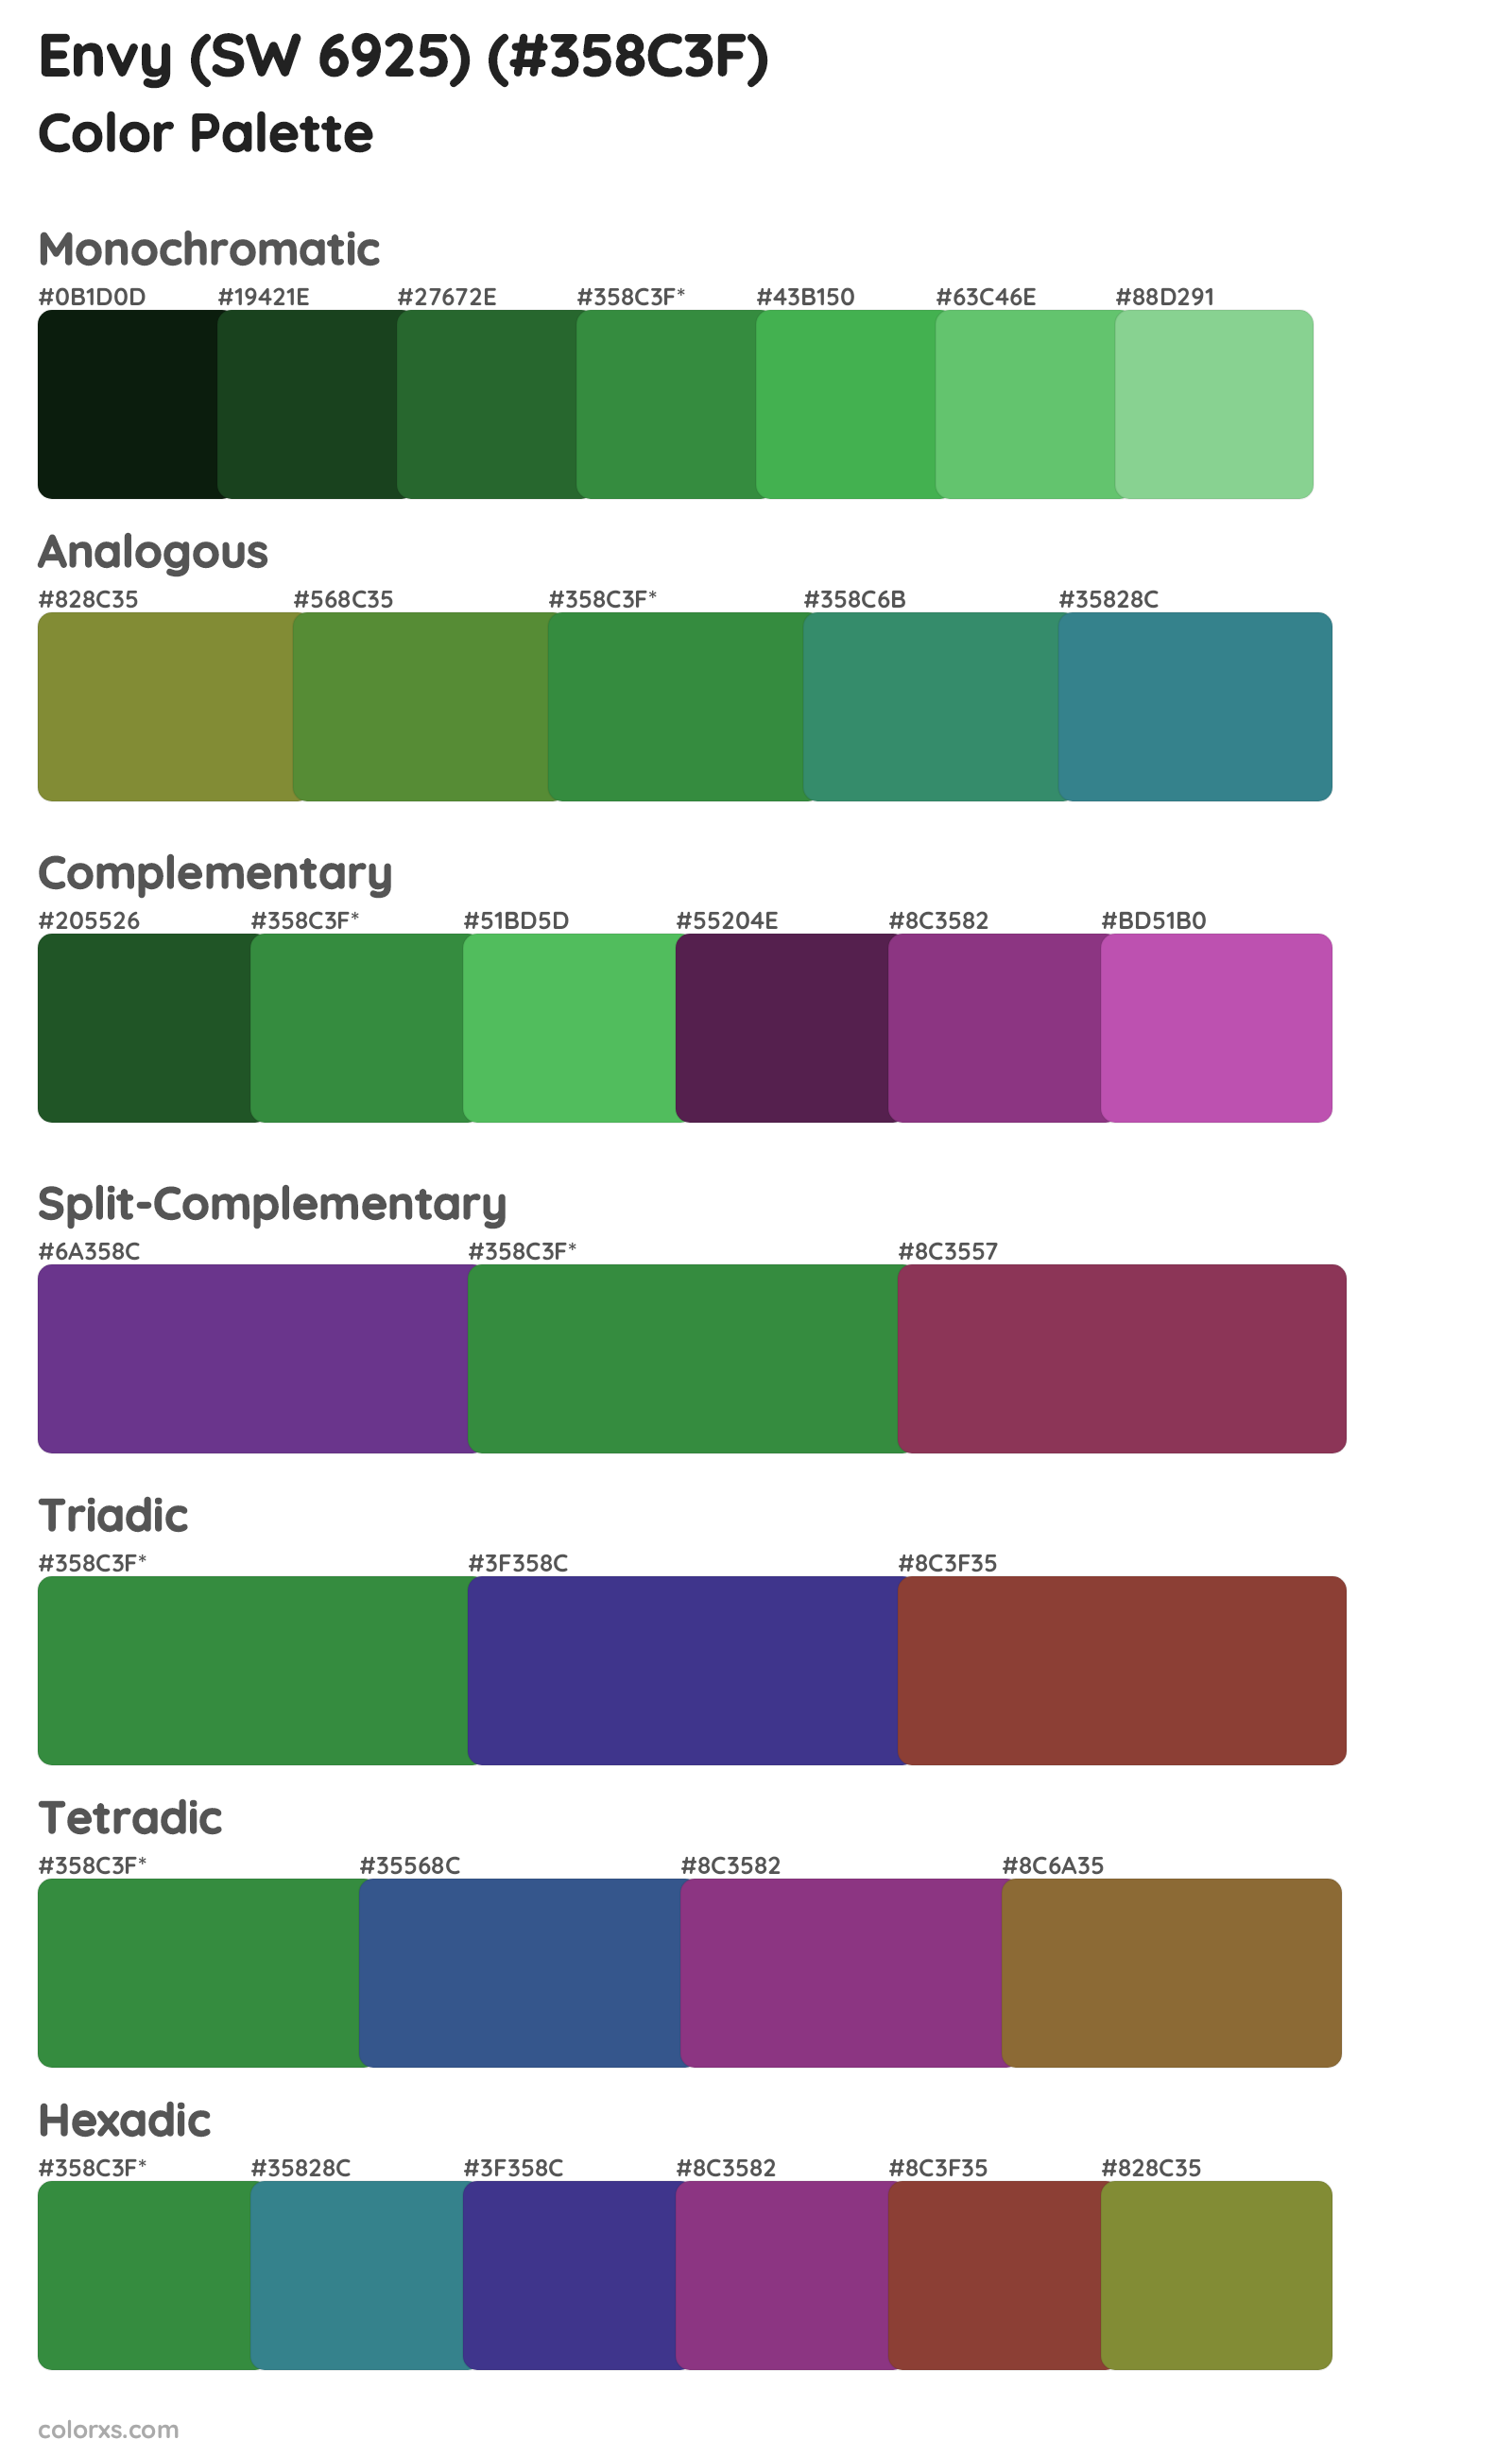 Envy (SW 6925) Color Scheme Palettes